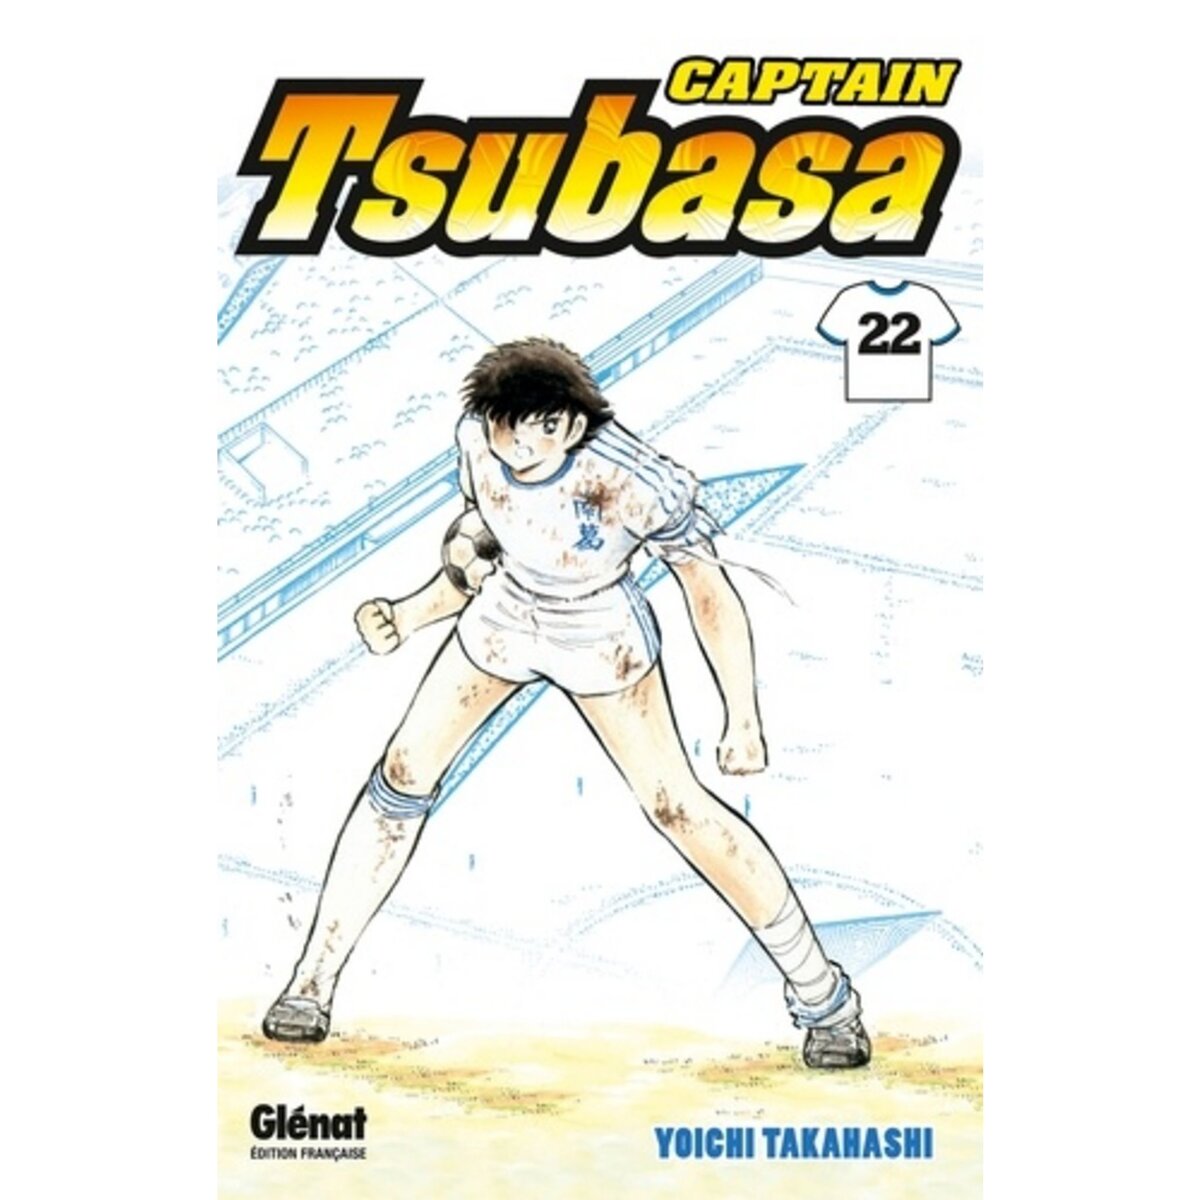  CAPTAIN TSUBASA TOME 22, Takahashi Yoichi